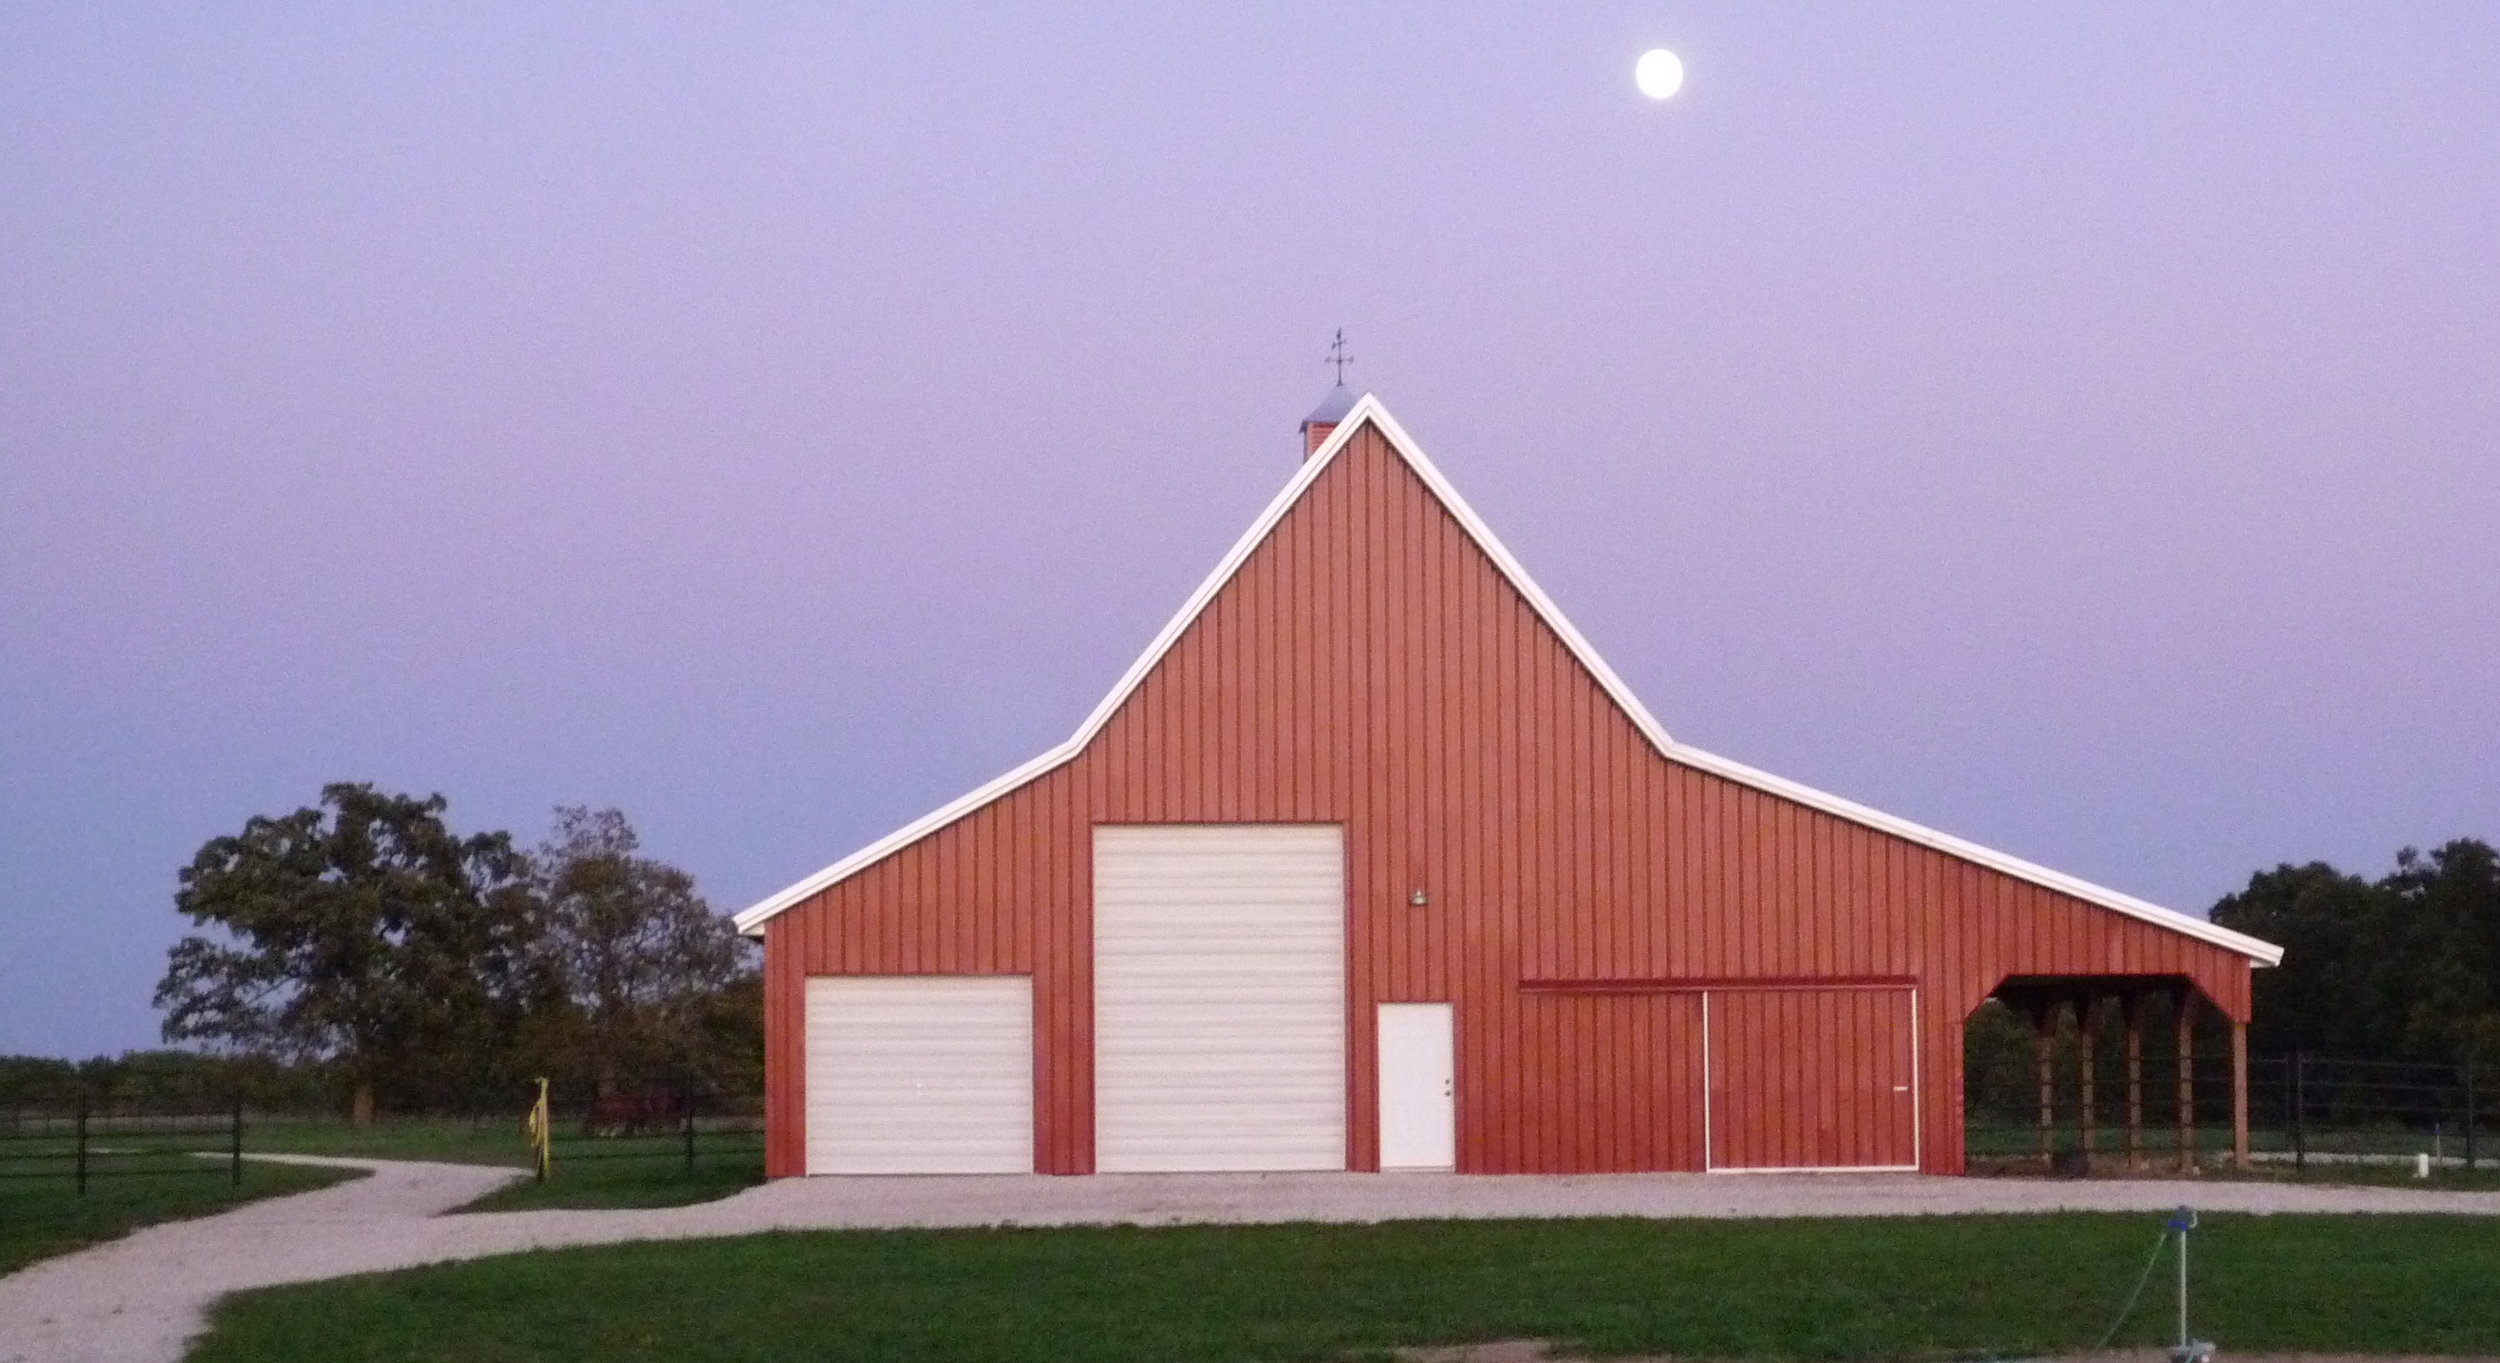 Barn by Moonlight